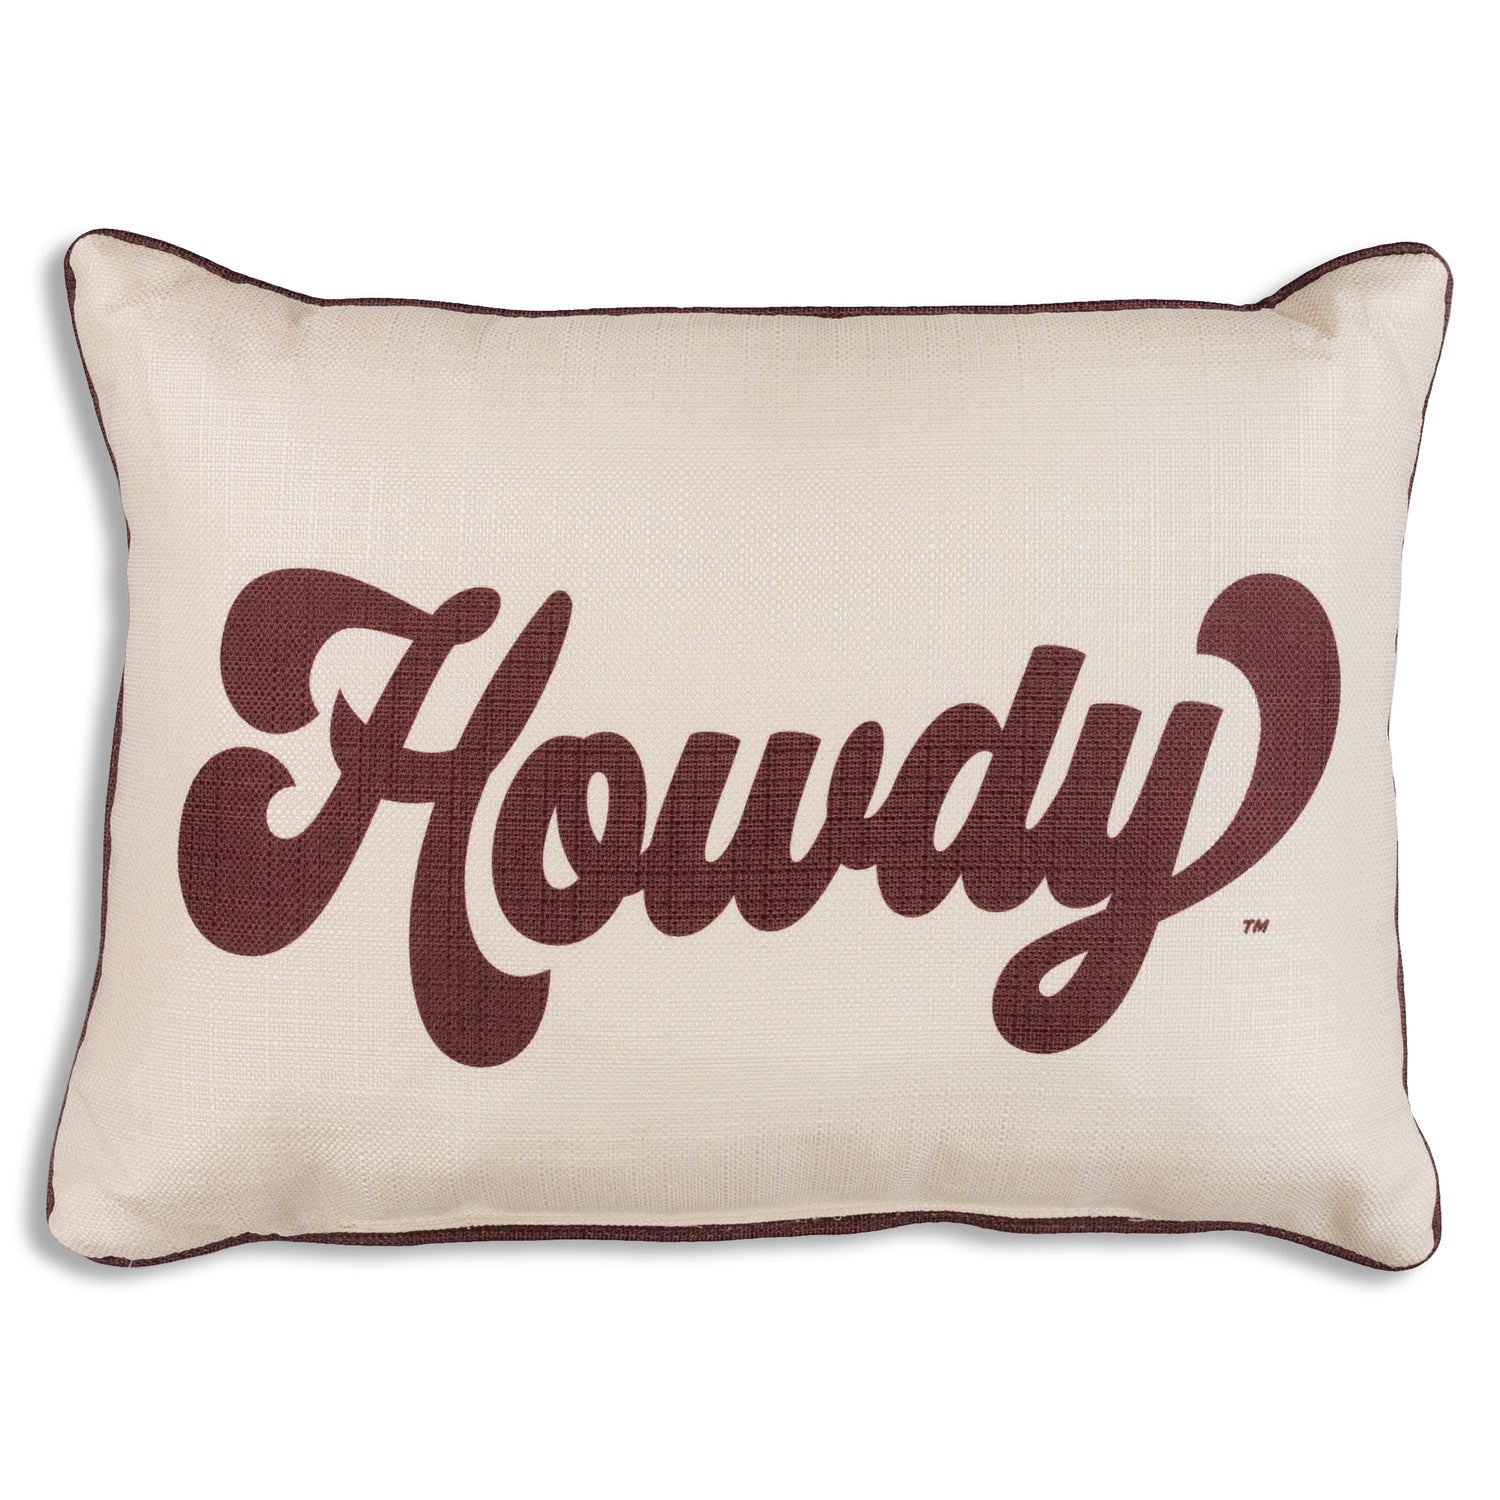 Howdy Script Throw Pillow